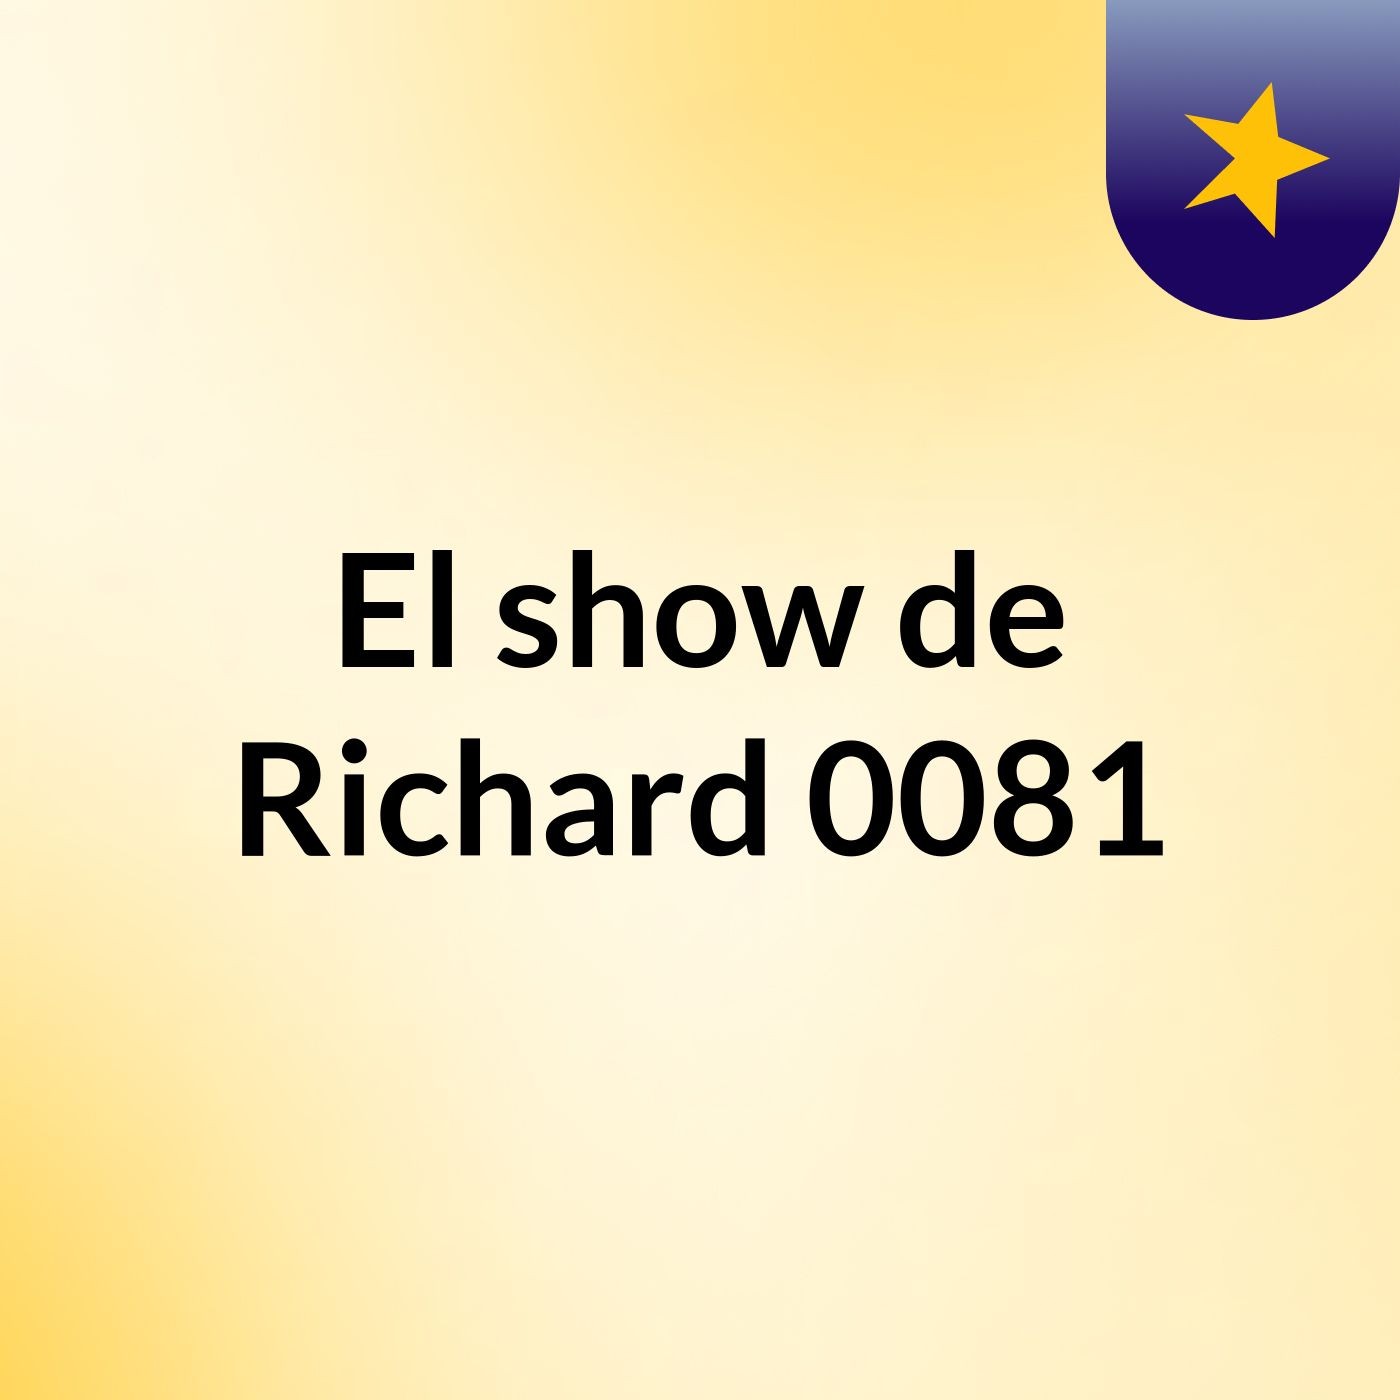 El show de Richard 0081